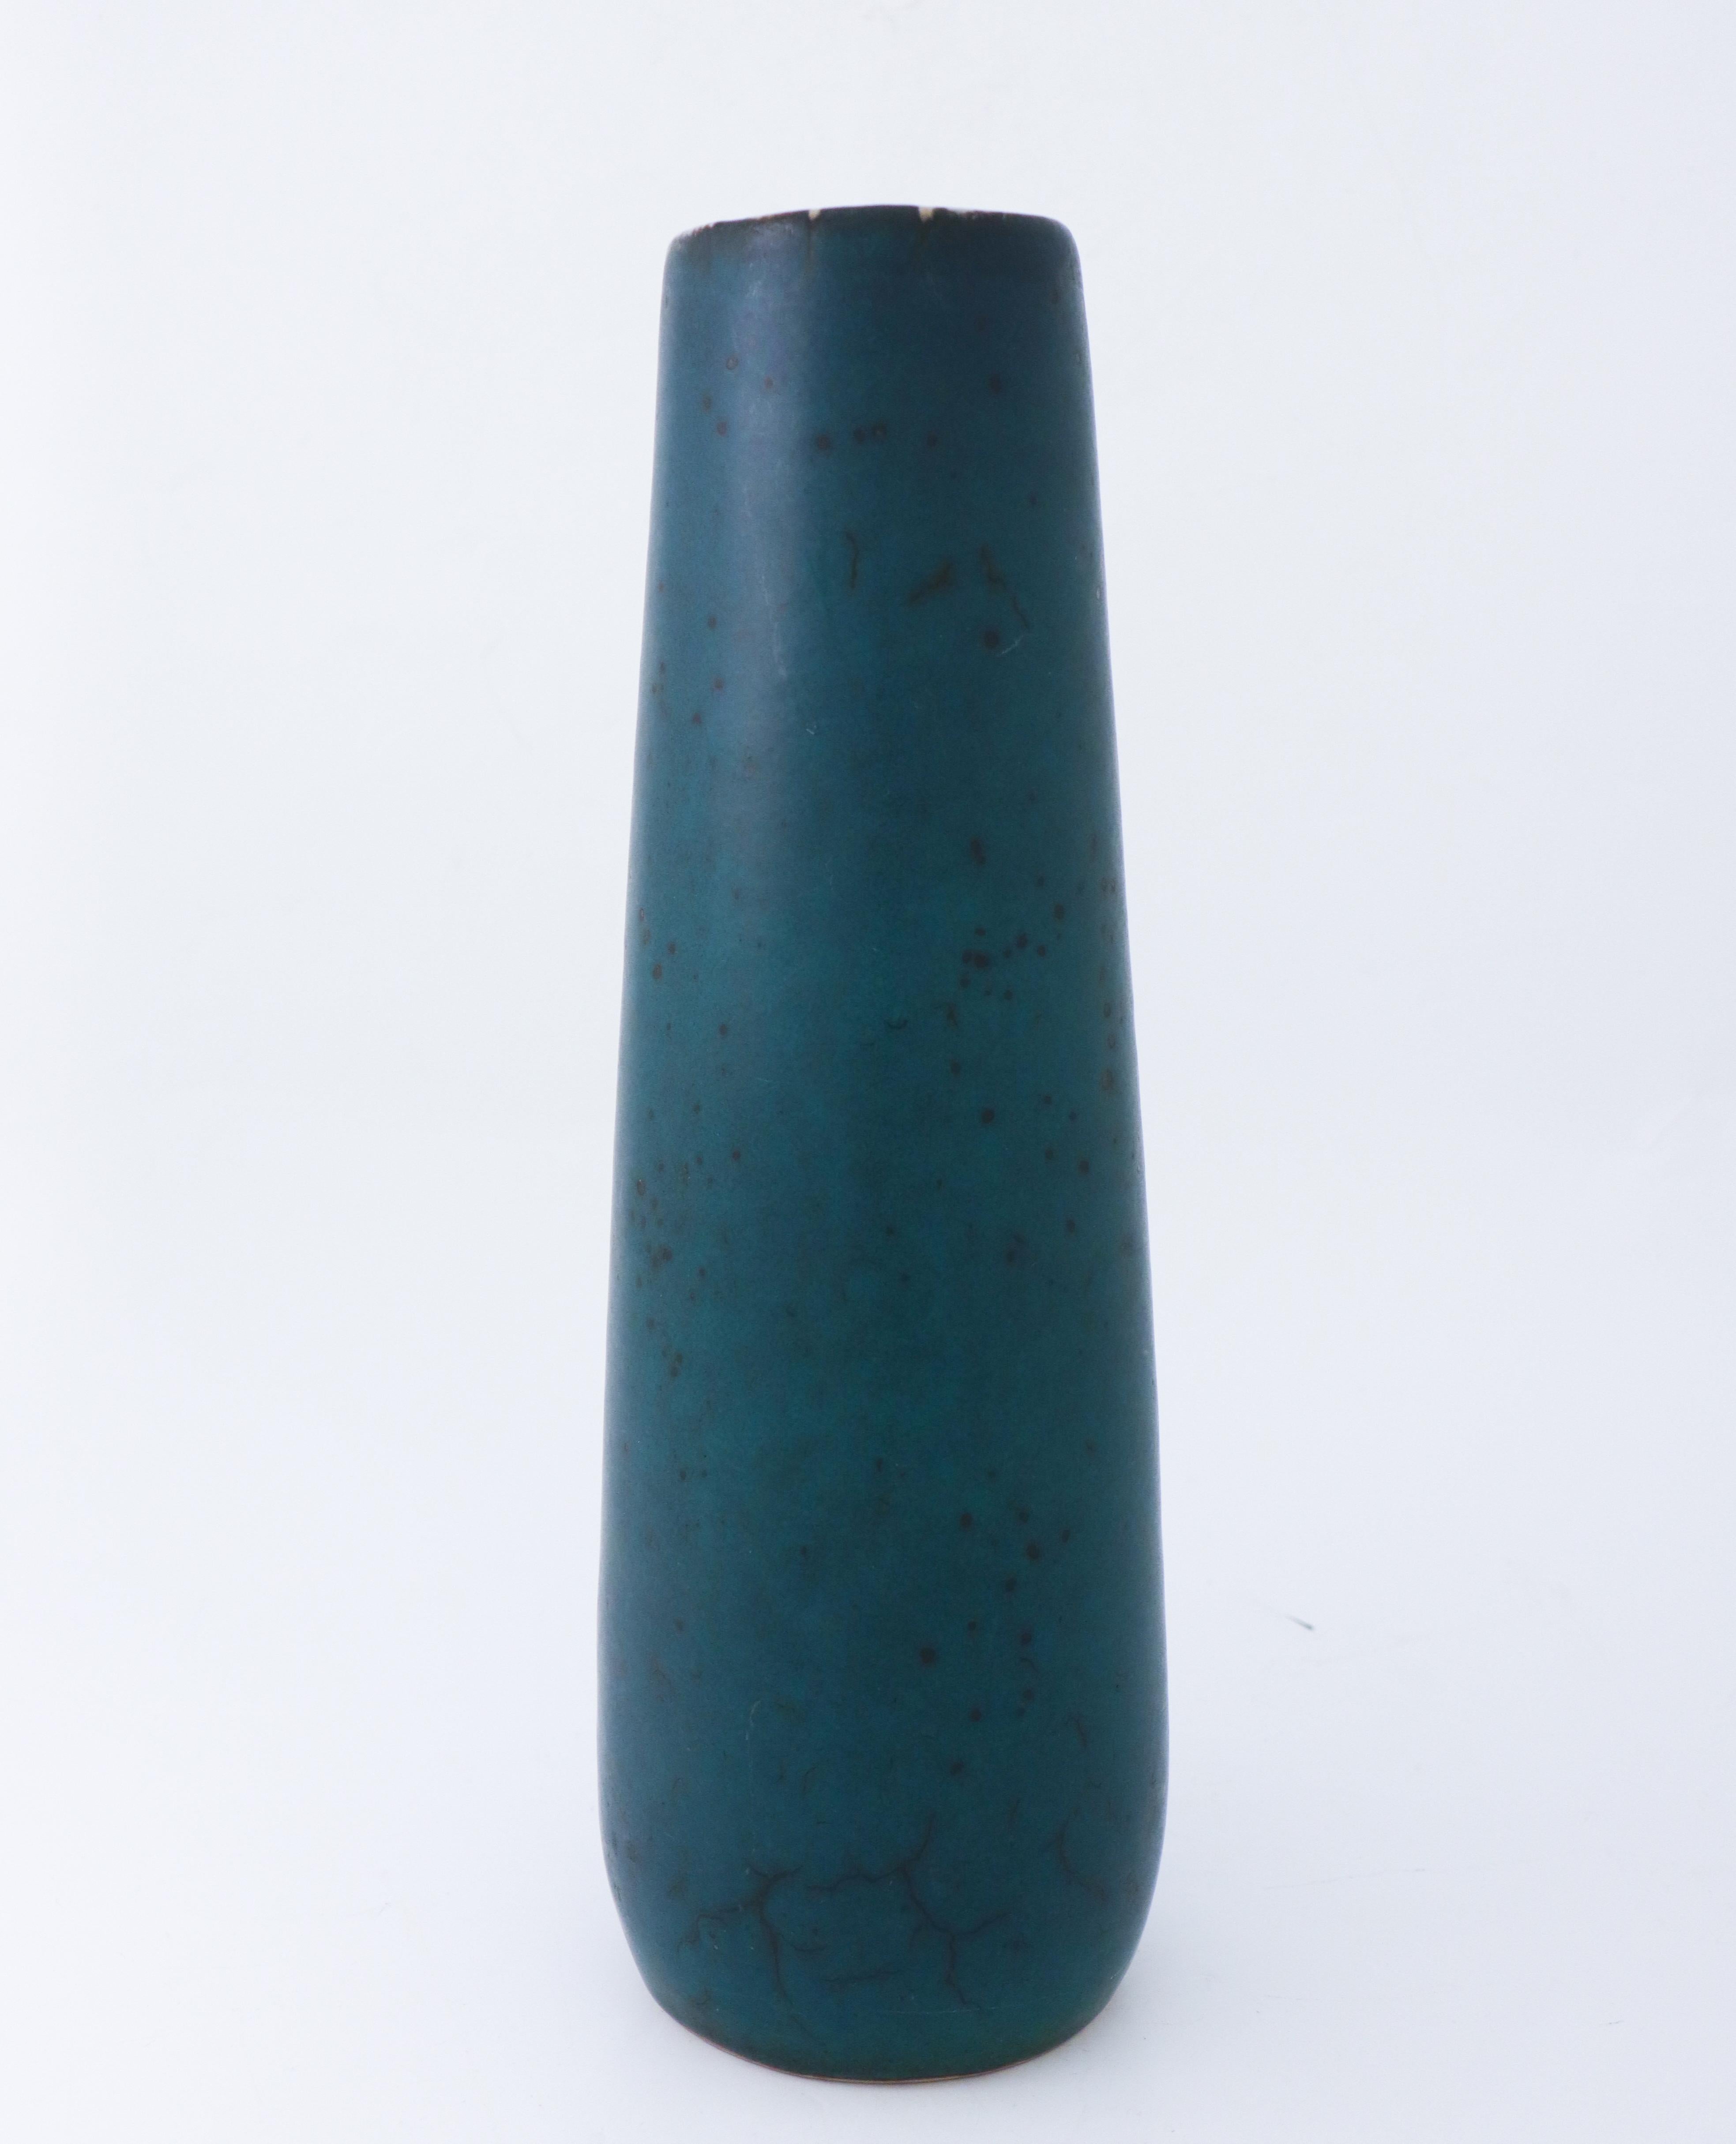 Un grand vase vert foncé conçu par Carl-Harry Stålhane à l'Atelier Rörstrand, il mesure 36,5 cm de haut et il est en parfait état.
 